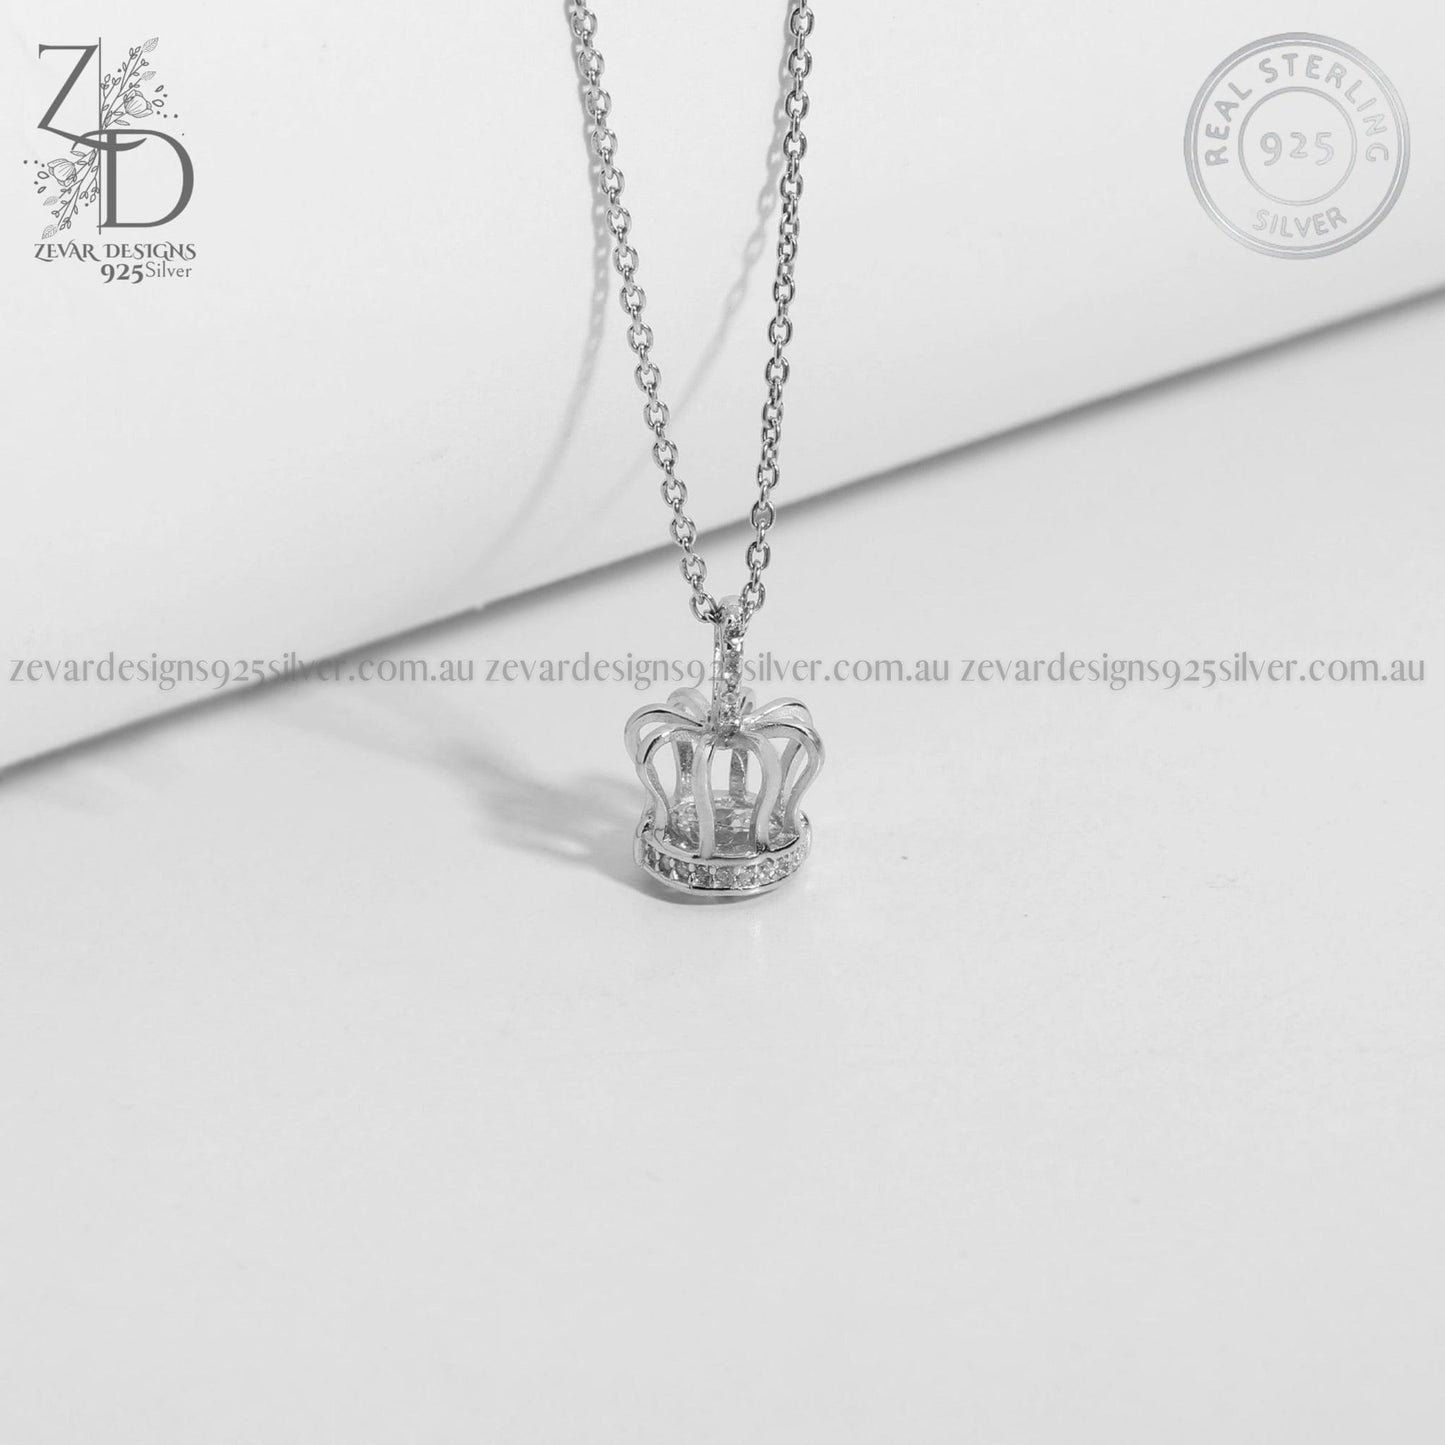 Zevar Designs 925 Silver Necklaces-Pendants Crown Pendant with Chain